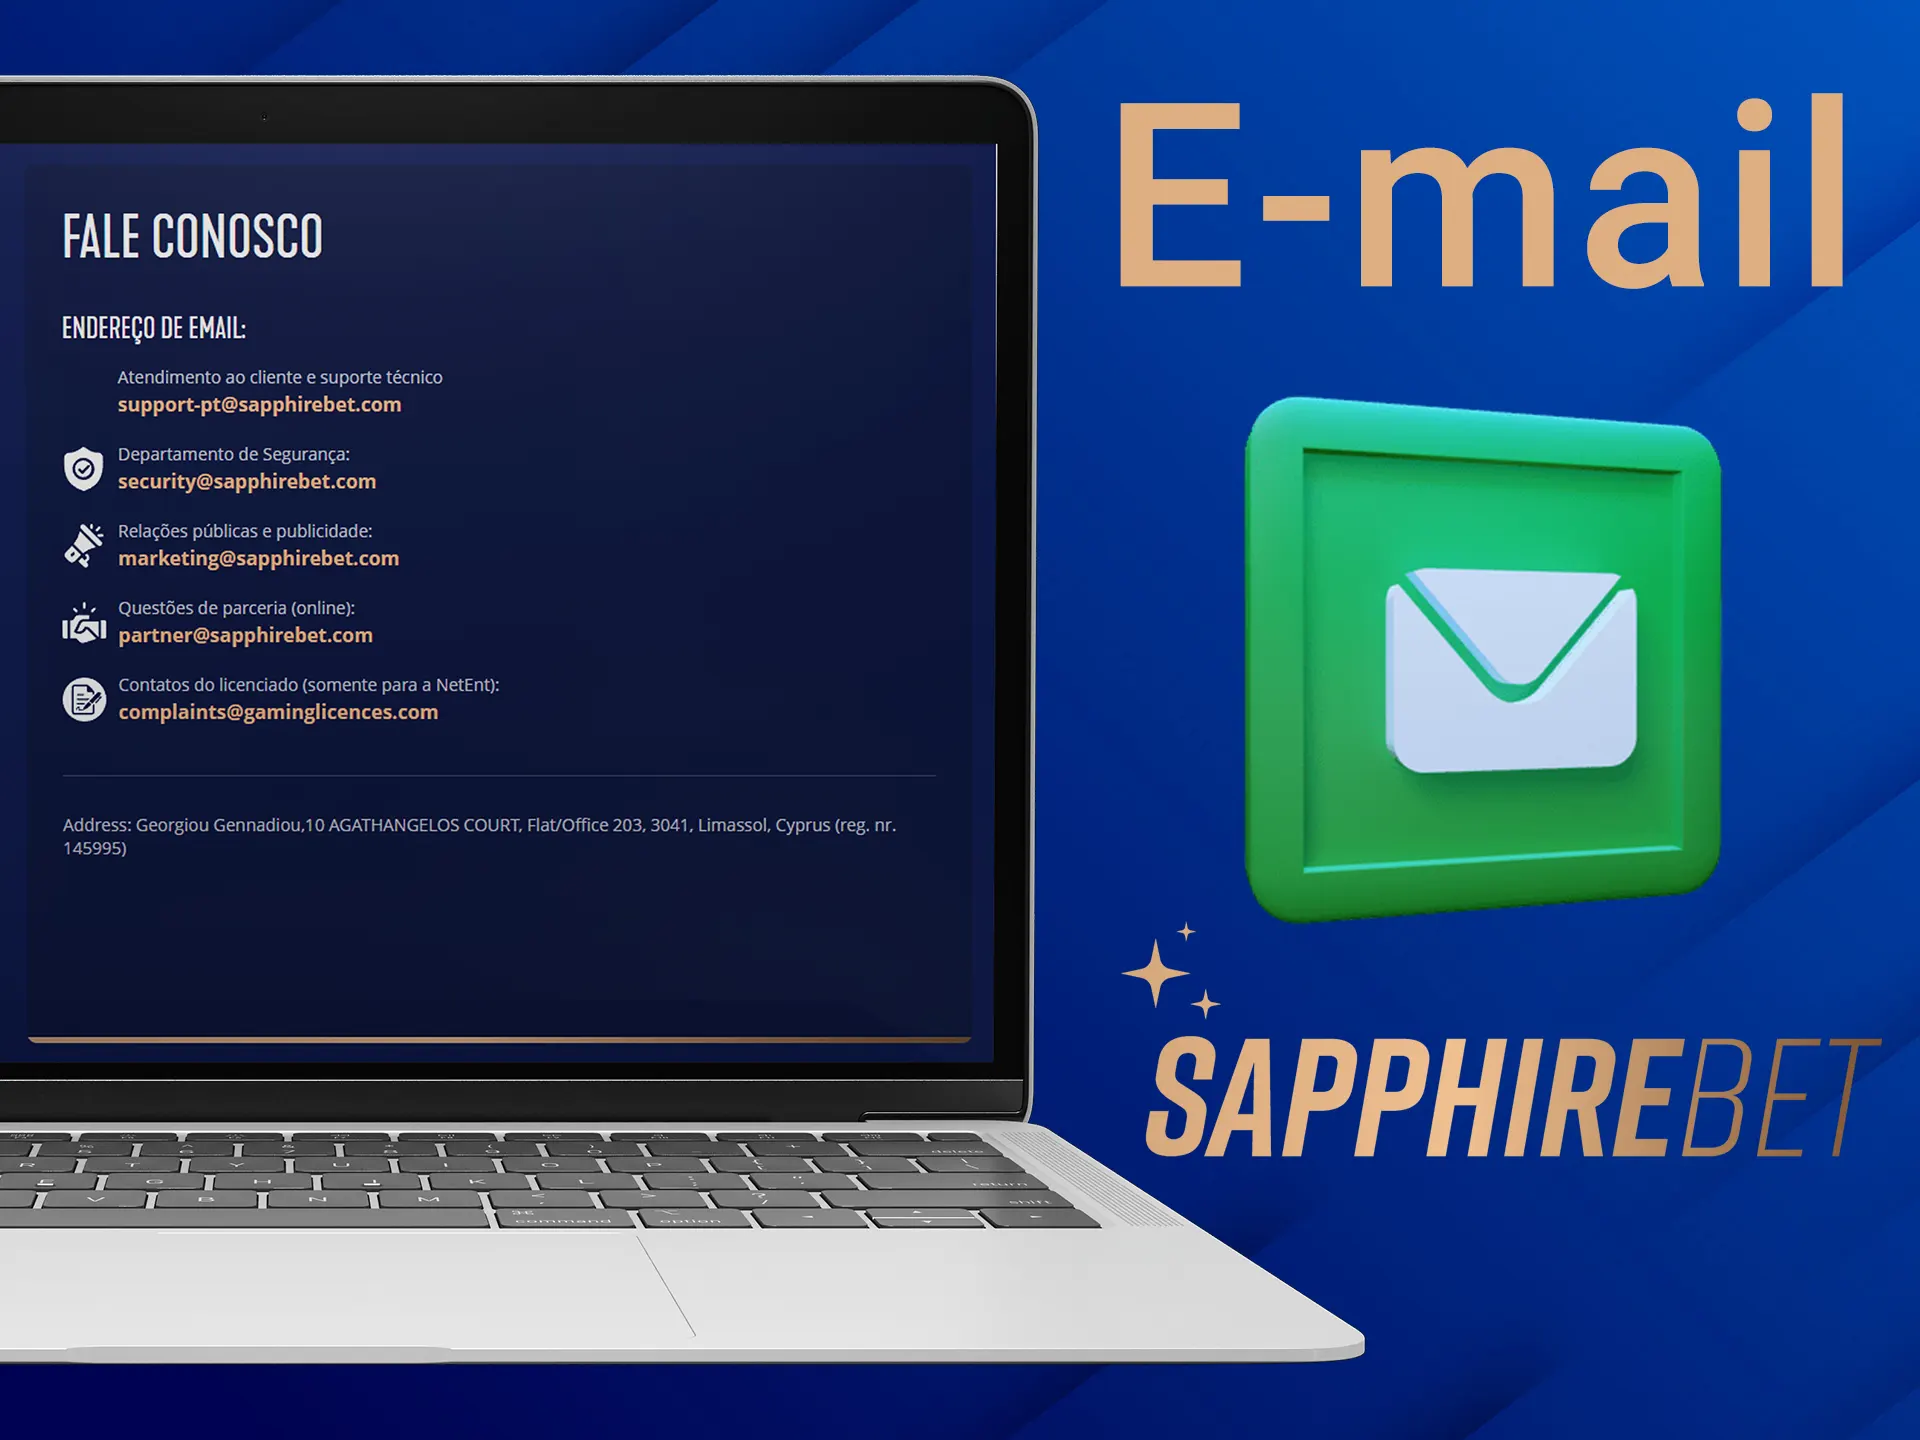 Envie sua pergunta para o suporte da Sapphirebet por e-mail.